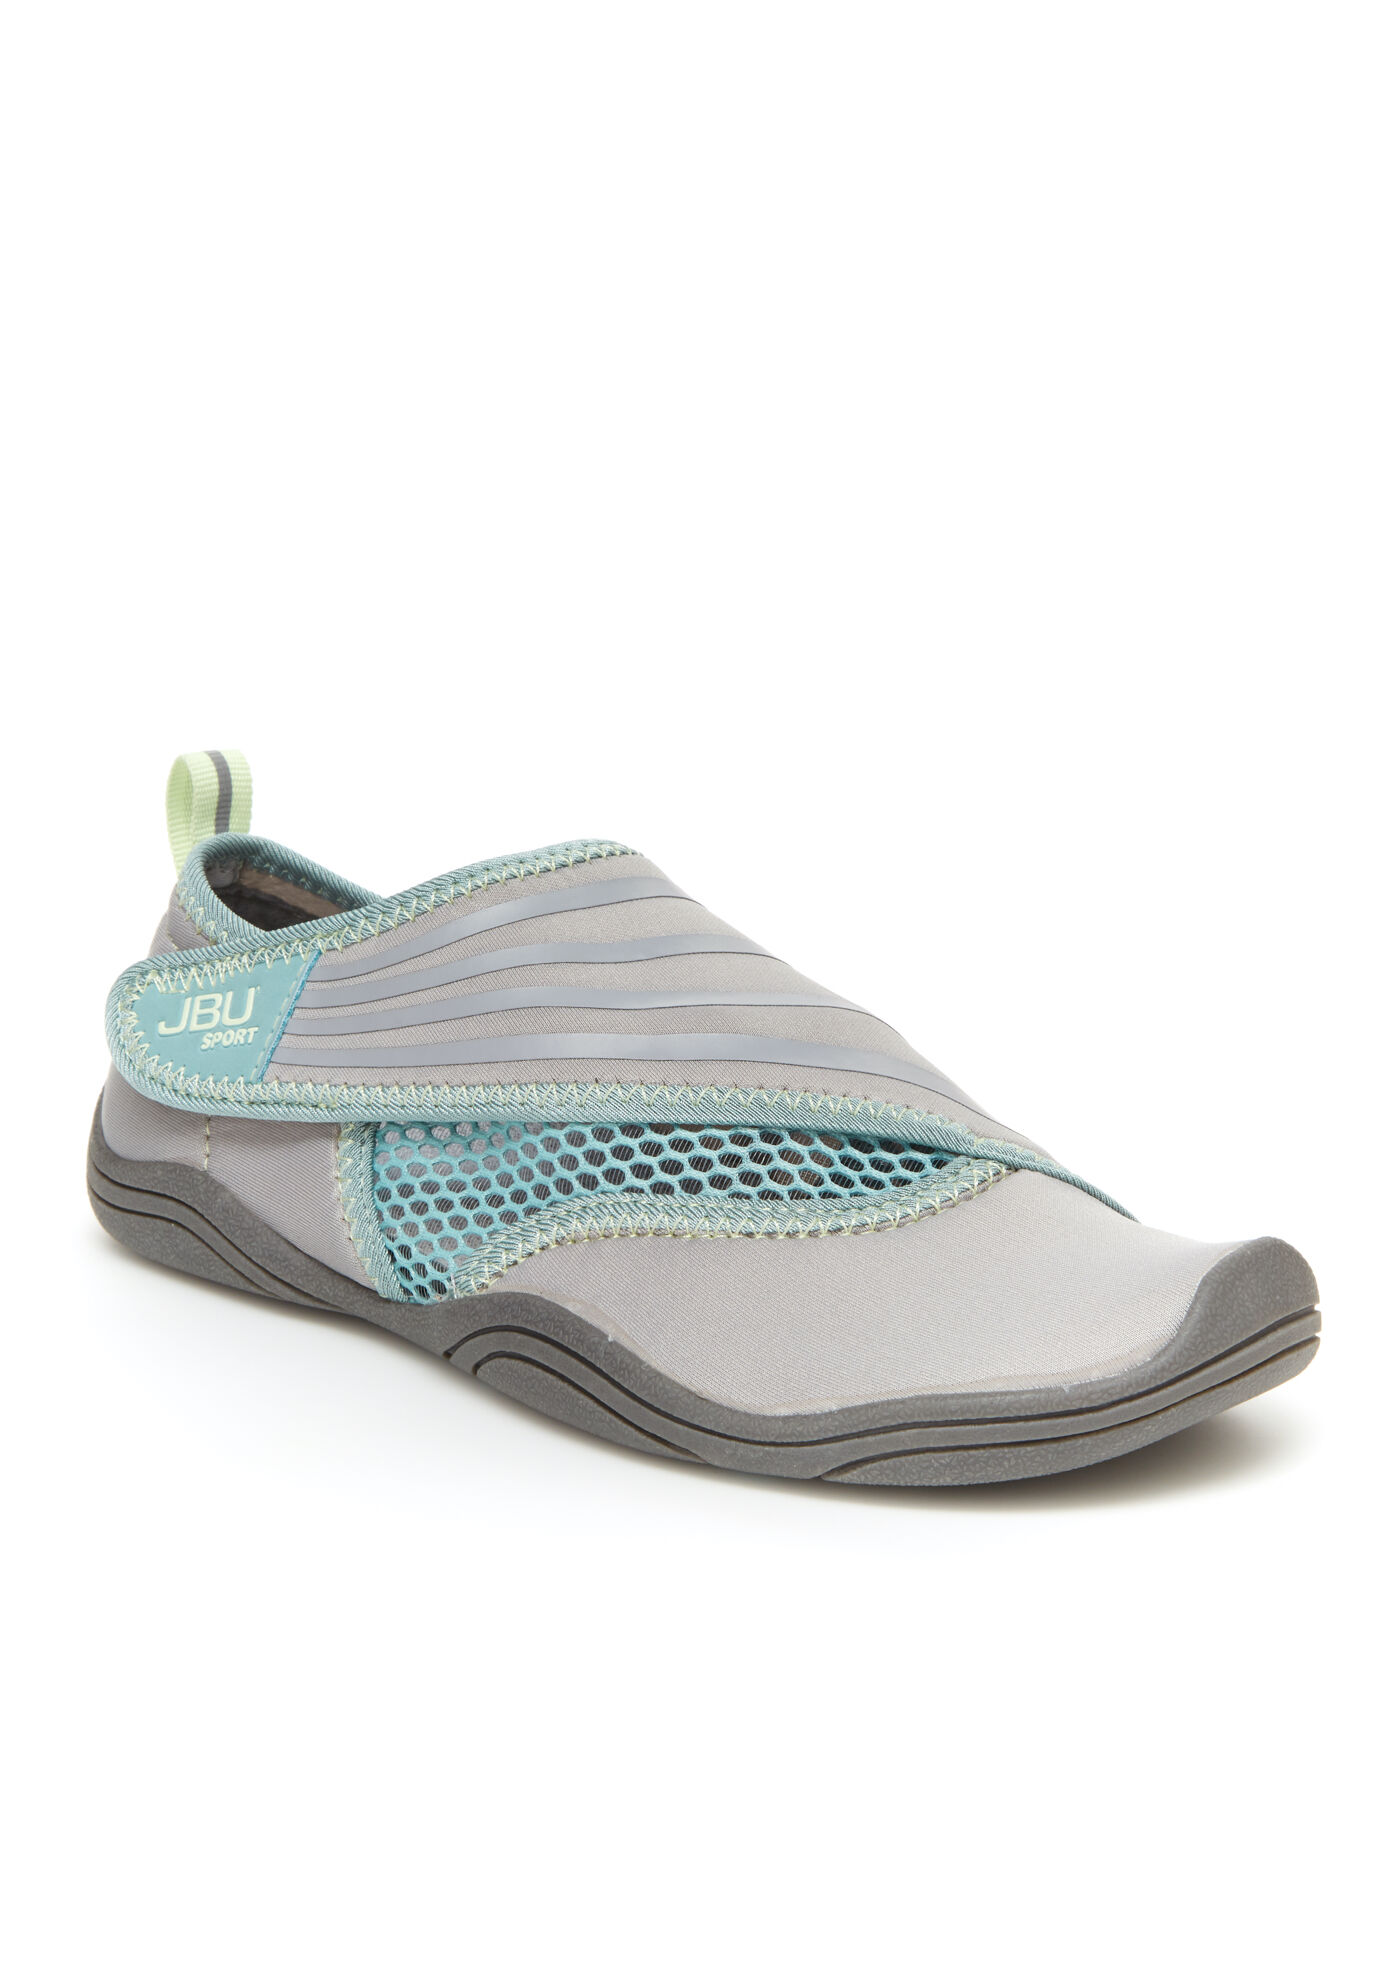 Women's Ariel Water Ready Water Shoe by JBU in Light Grey Teal (Size 7 M)